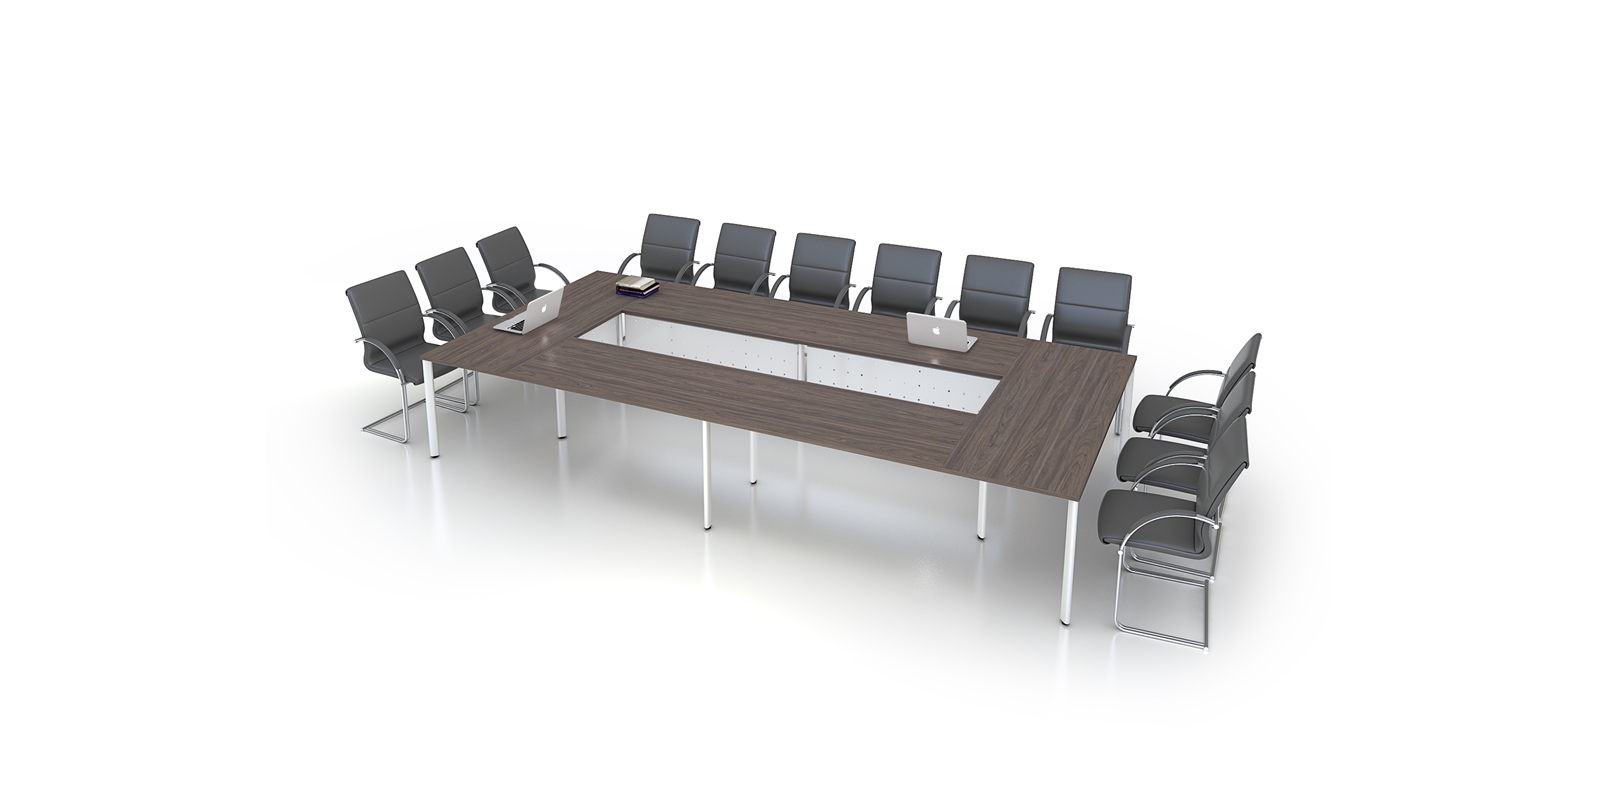 Bàn họp văn phòng – vật dụng nội thất cần thiết cho phòng họp - Nội thất cao cấp Gia Phát tại TPHCM